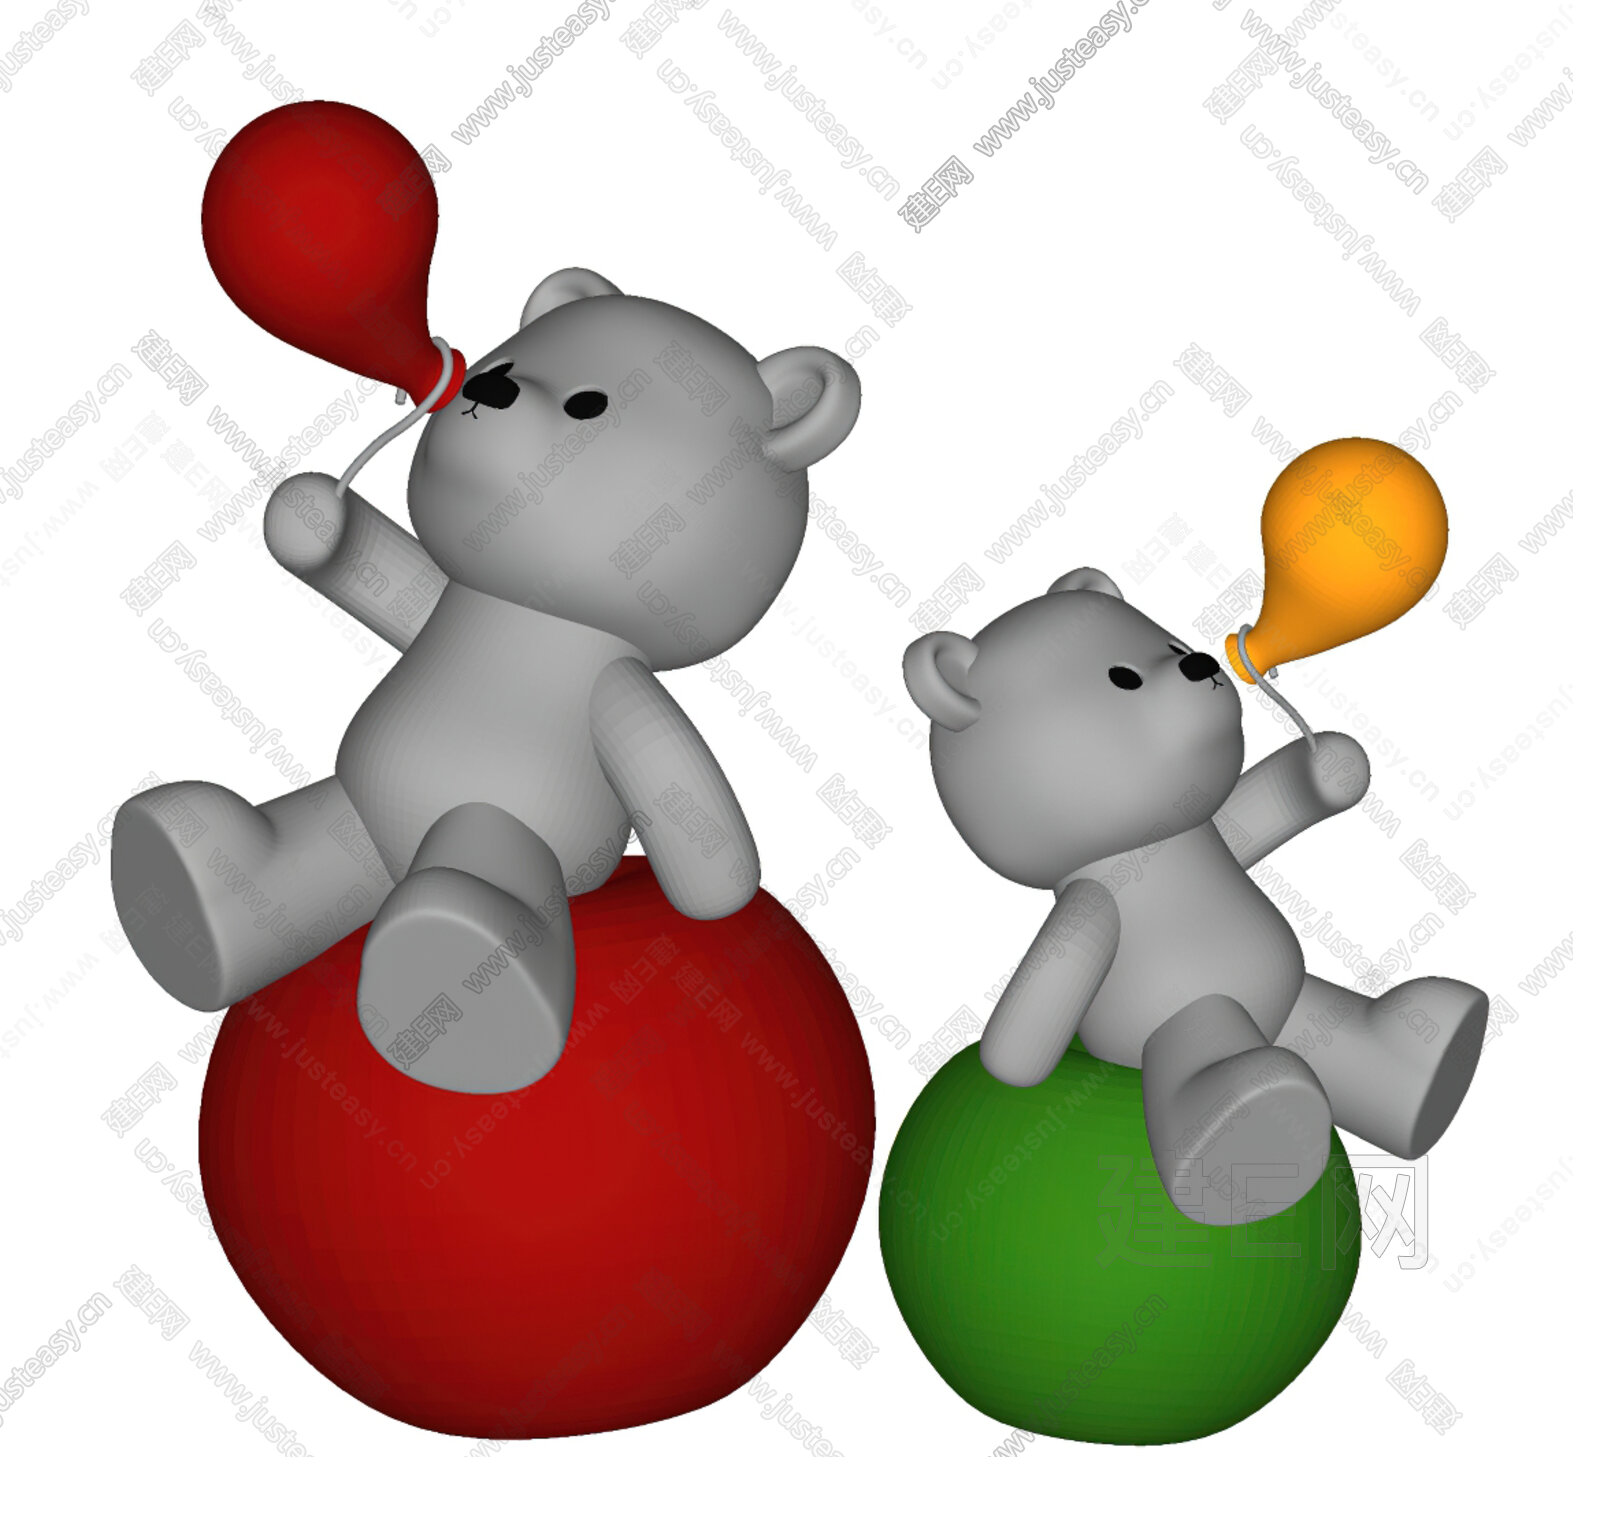 可爱的玩具熊拿着心气球的夫妇图片免费下载-5071421195-千图网Pro